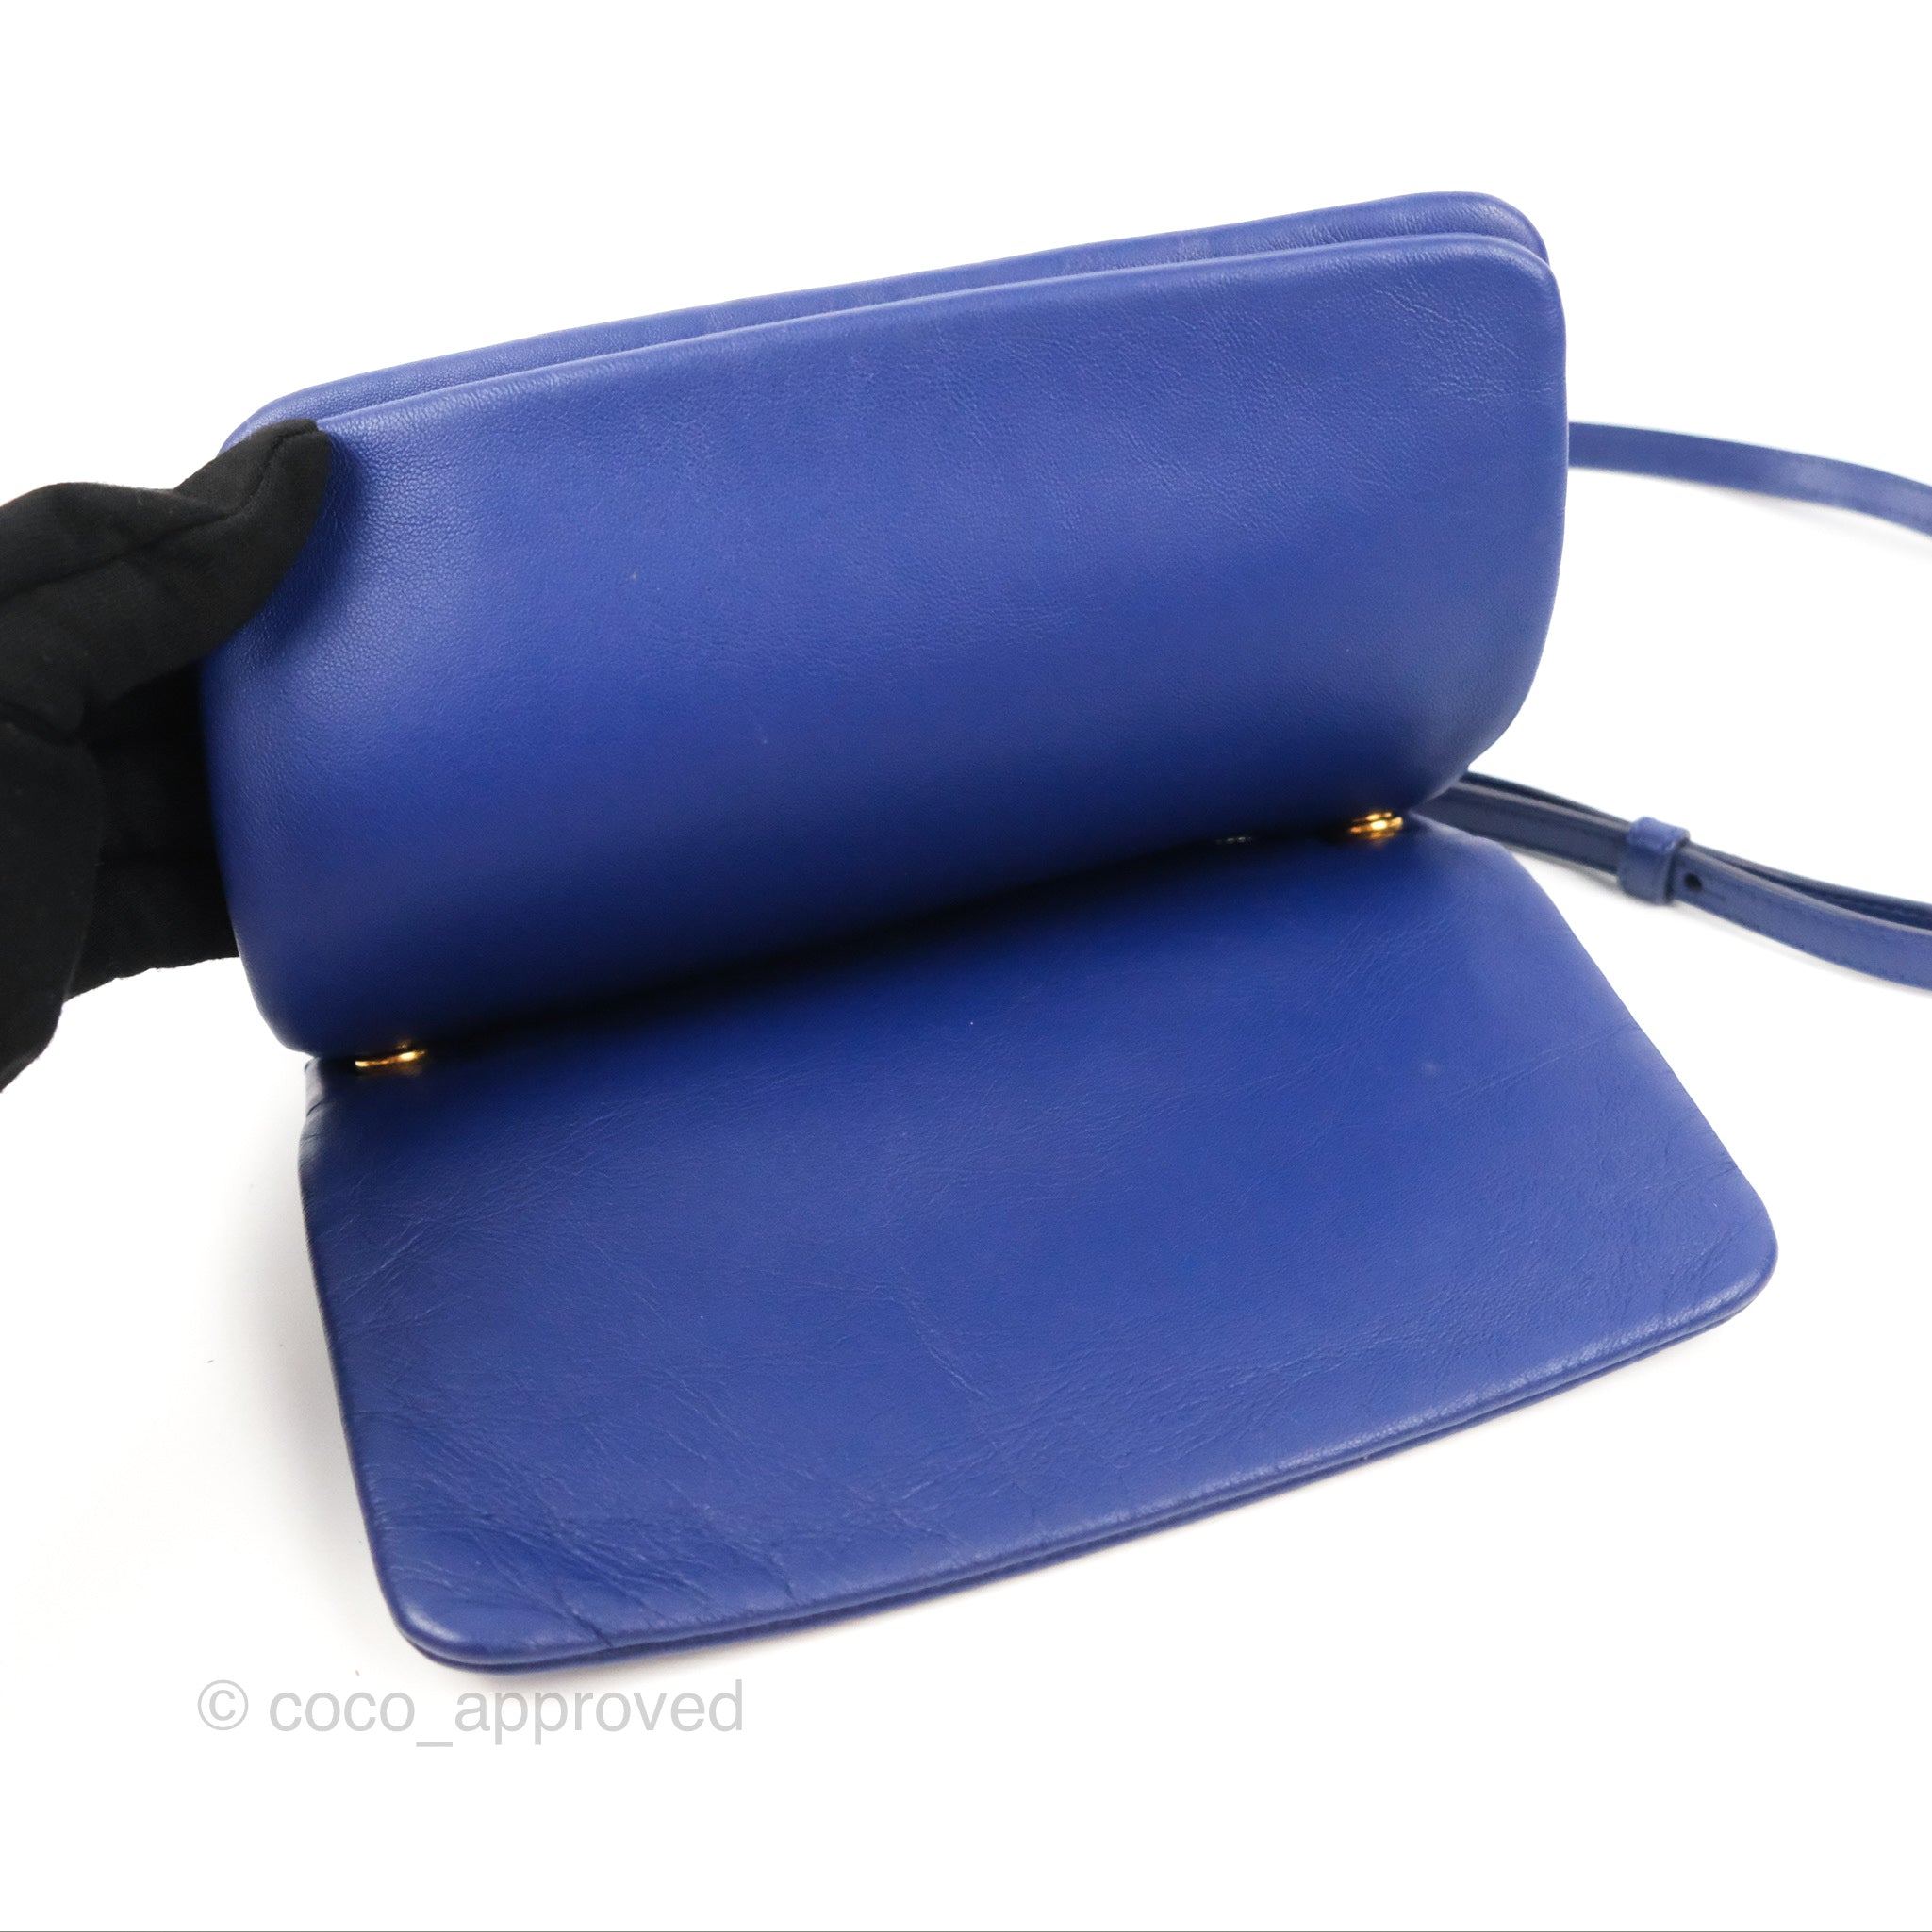 Celine Trio Cobalt Blue Handbag